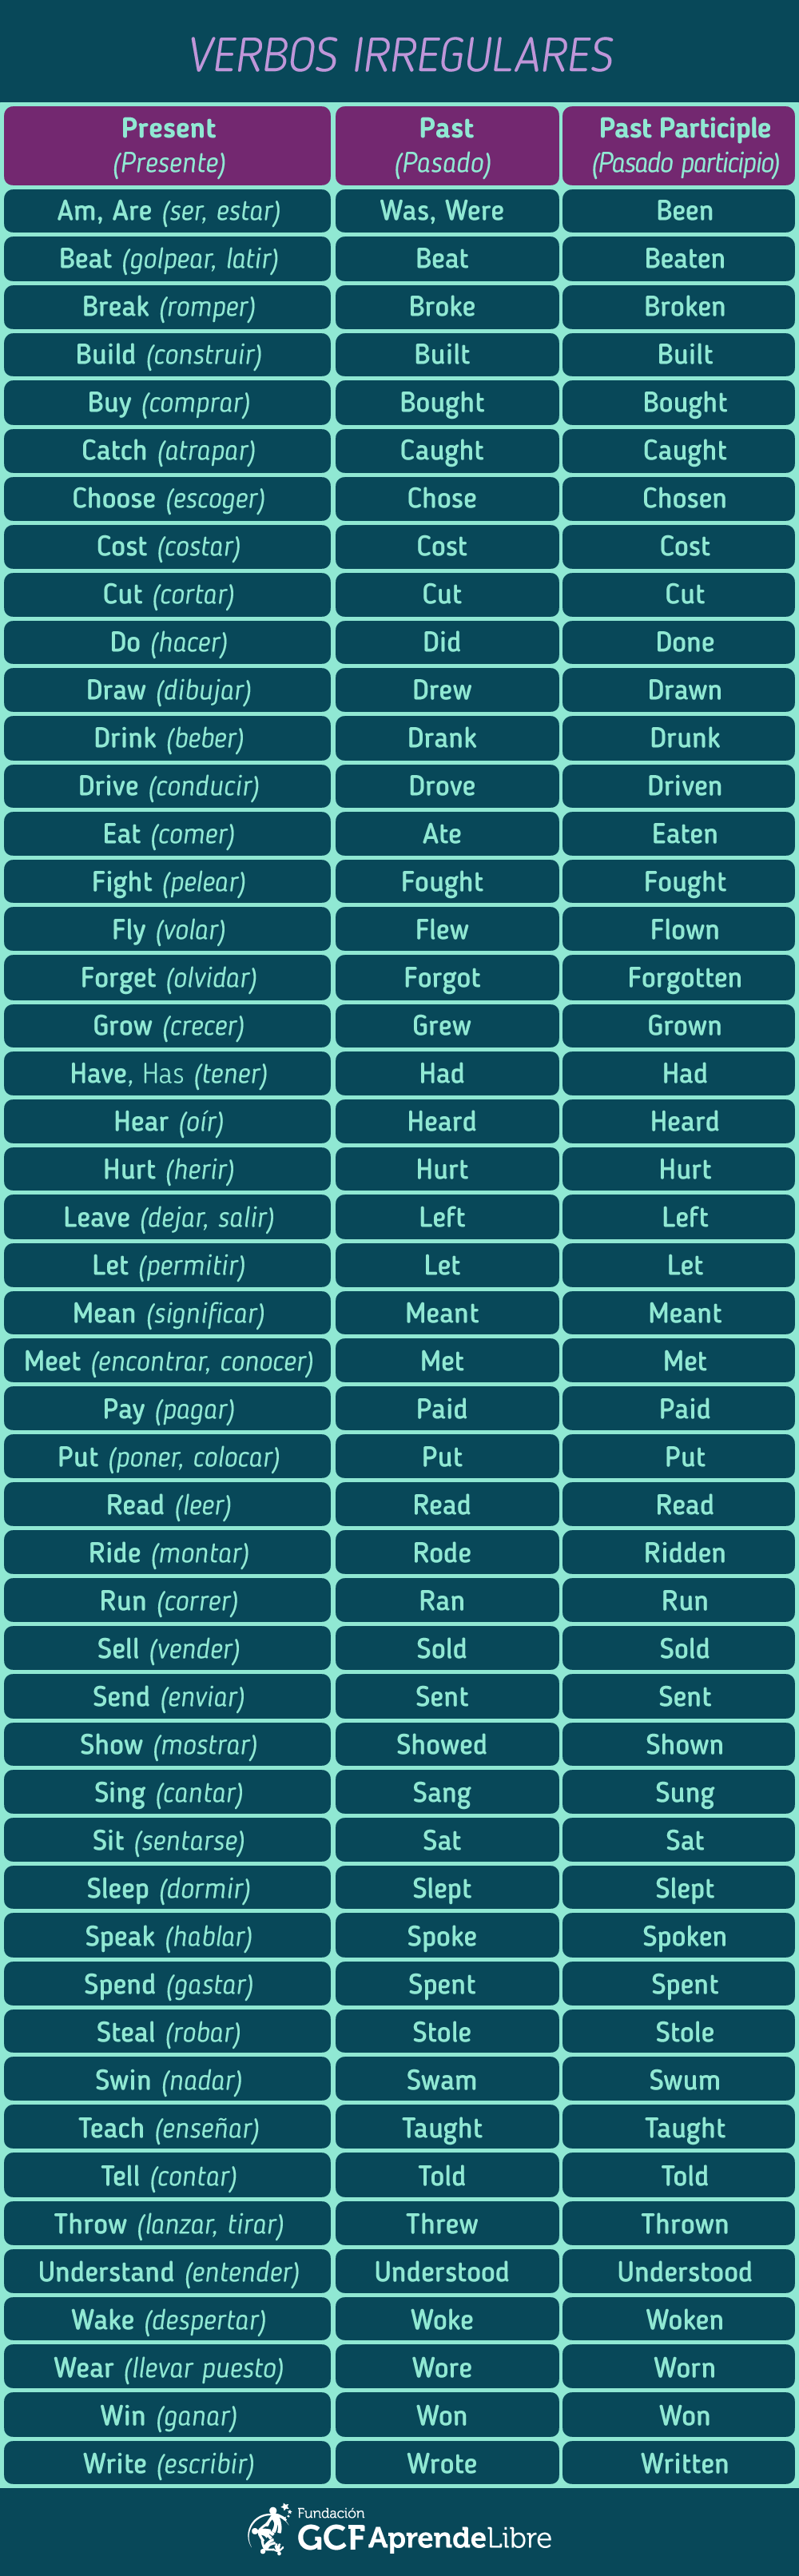 Listado de verbos irregulares más comunes.